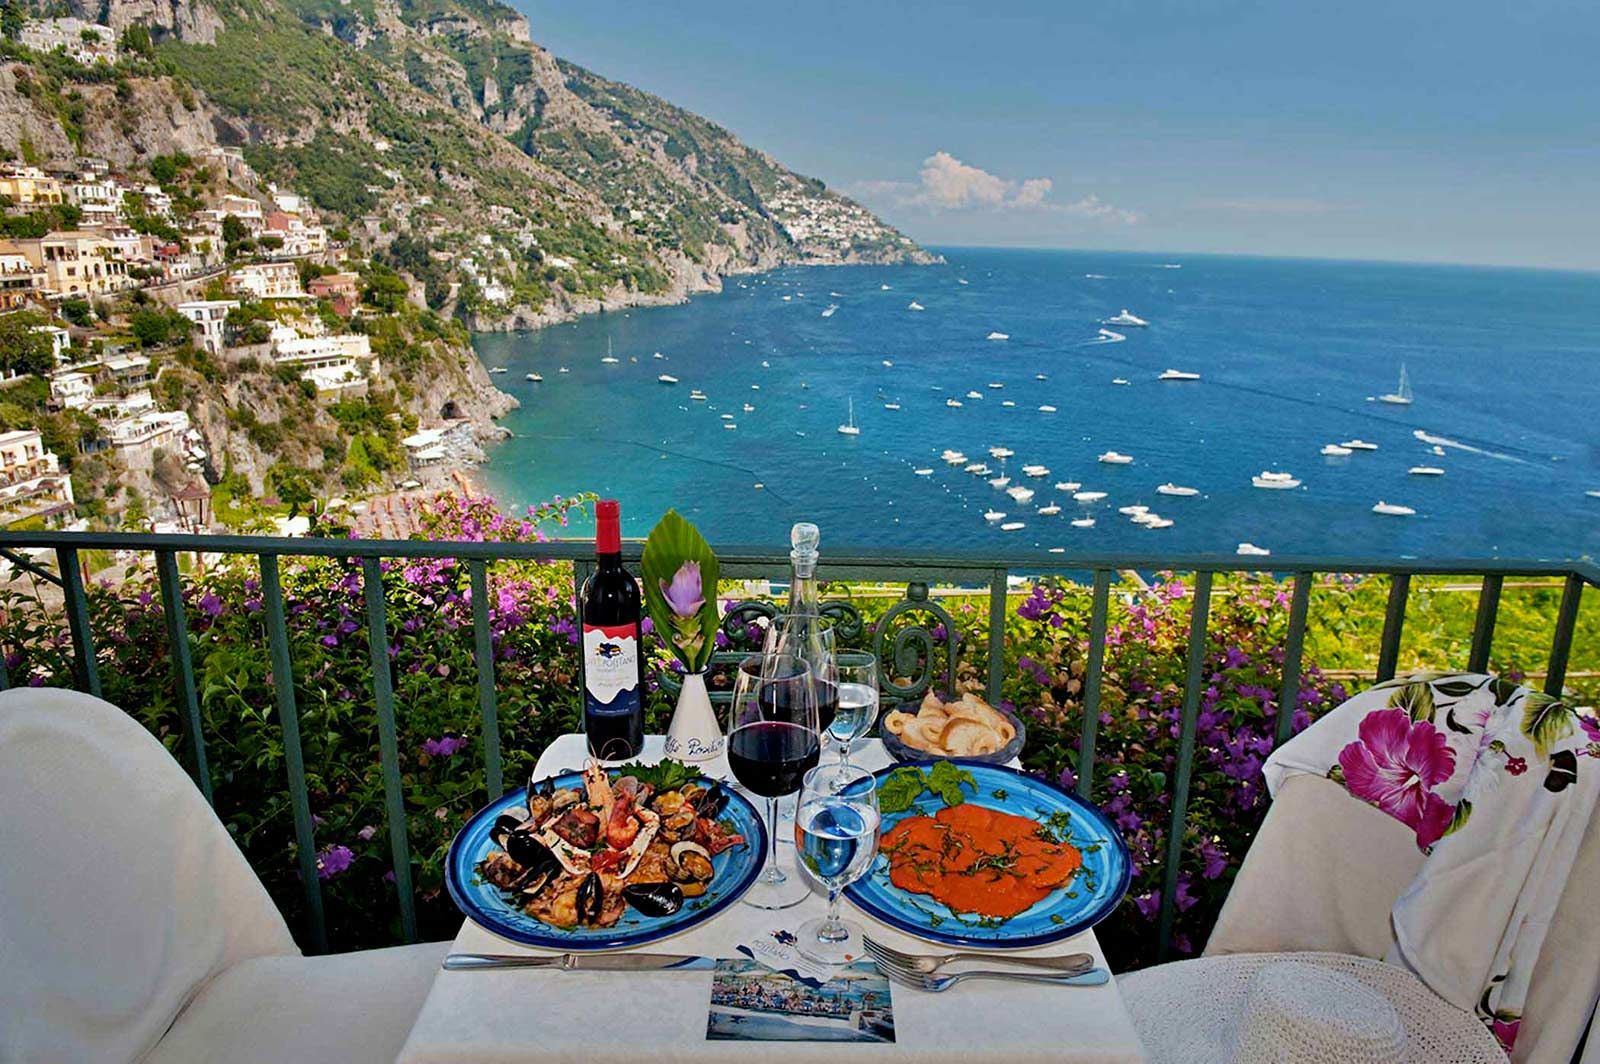 Гастрономический тур на Сицилию перевернет ваши представления о пище